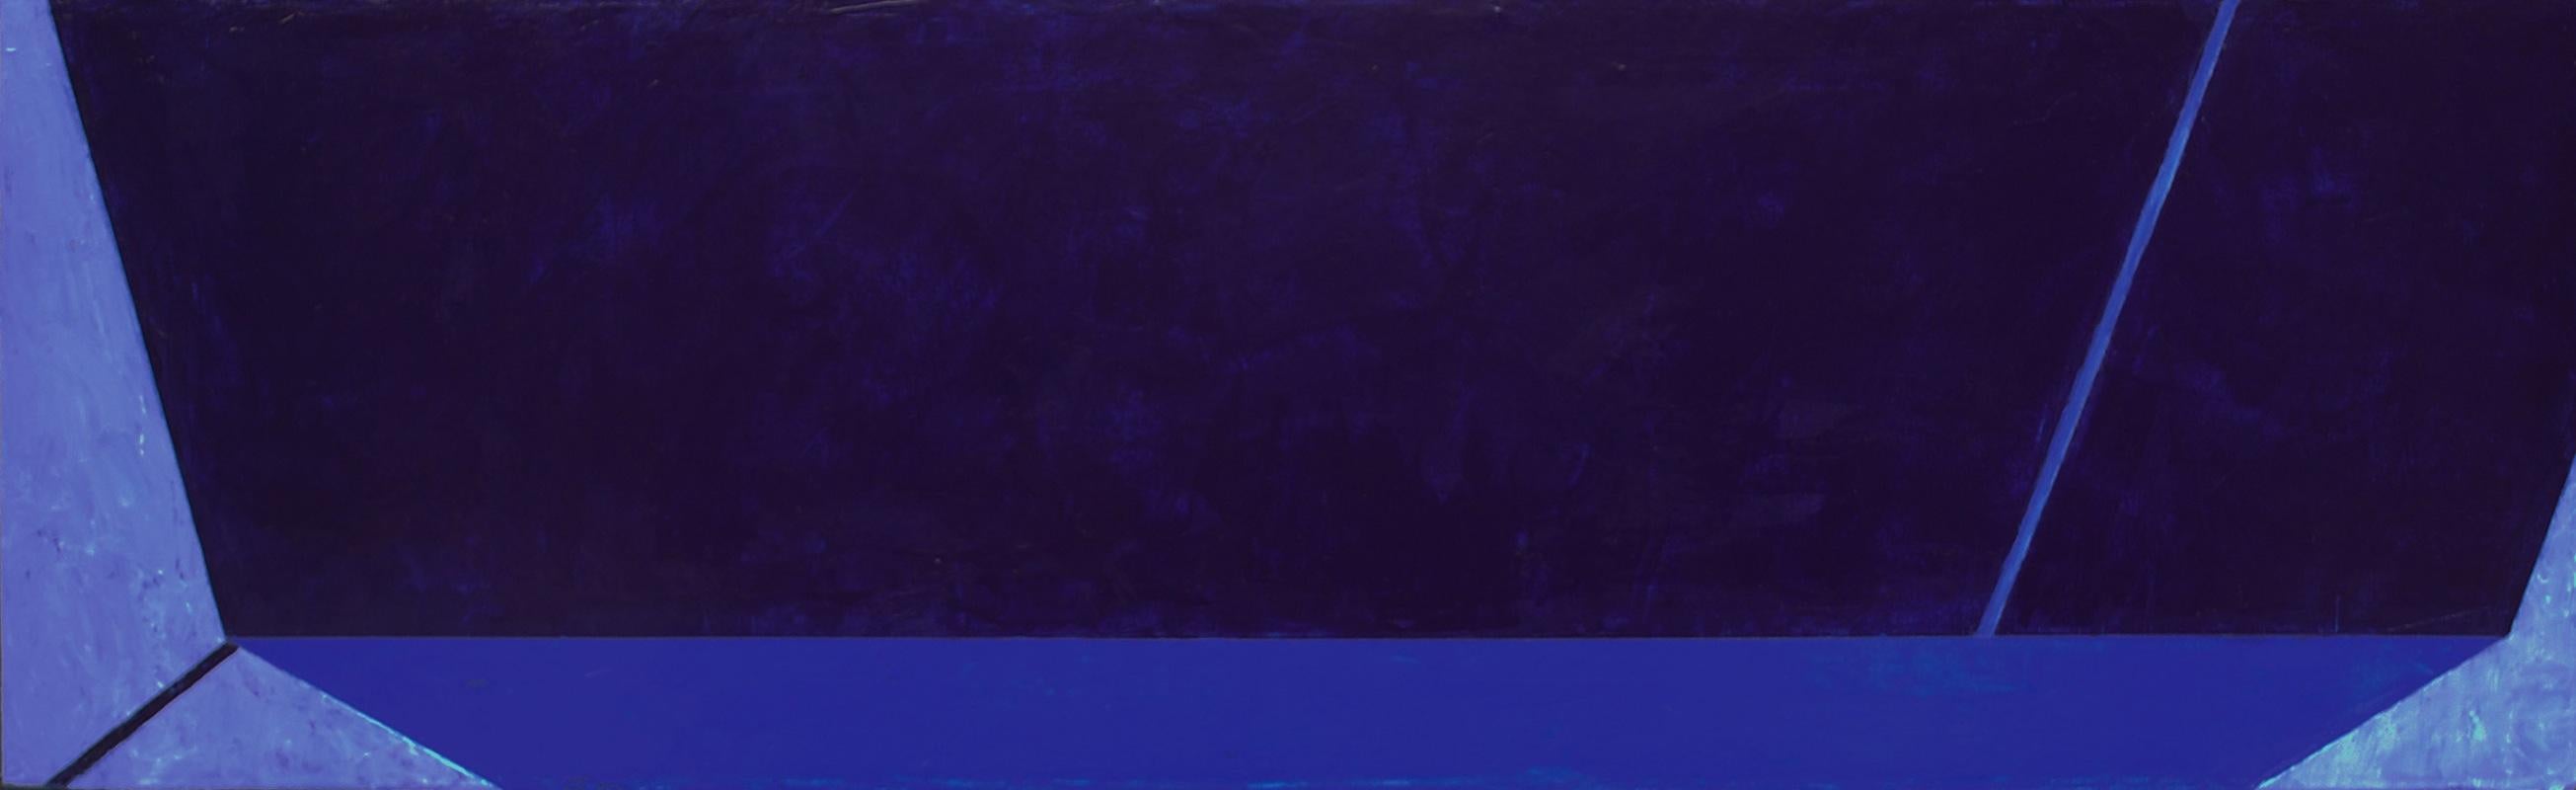 Macyn Bolt, Shift IV, 2018, Minimalist, acrylic on canvas, 16 x 20 x 2 inches For Sale 6